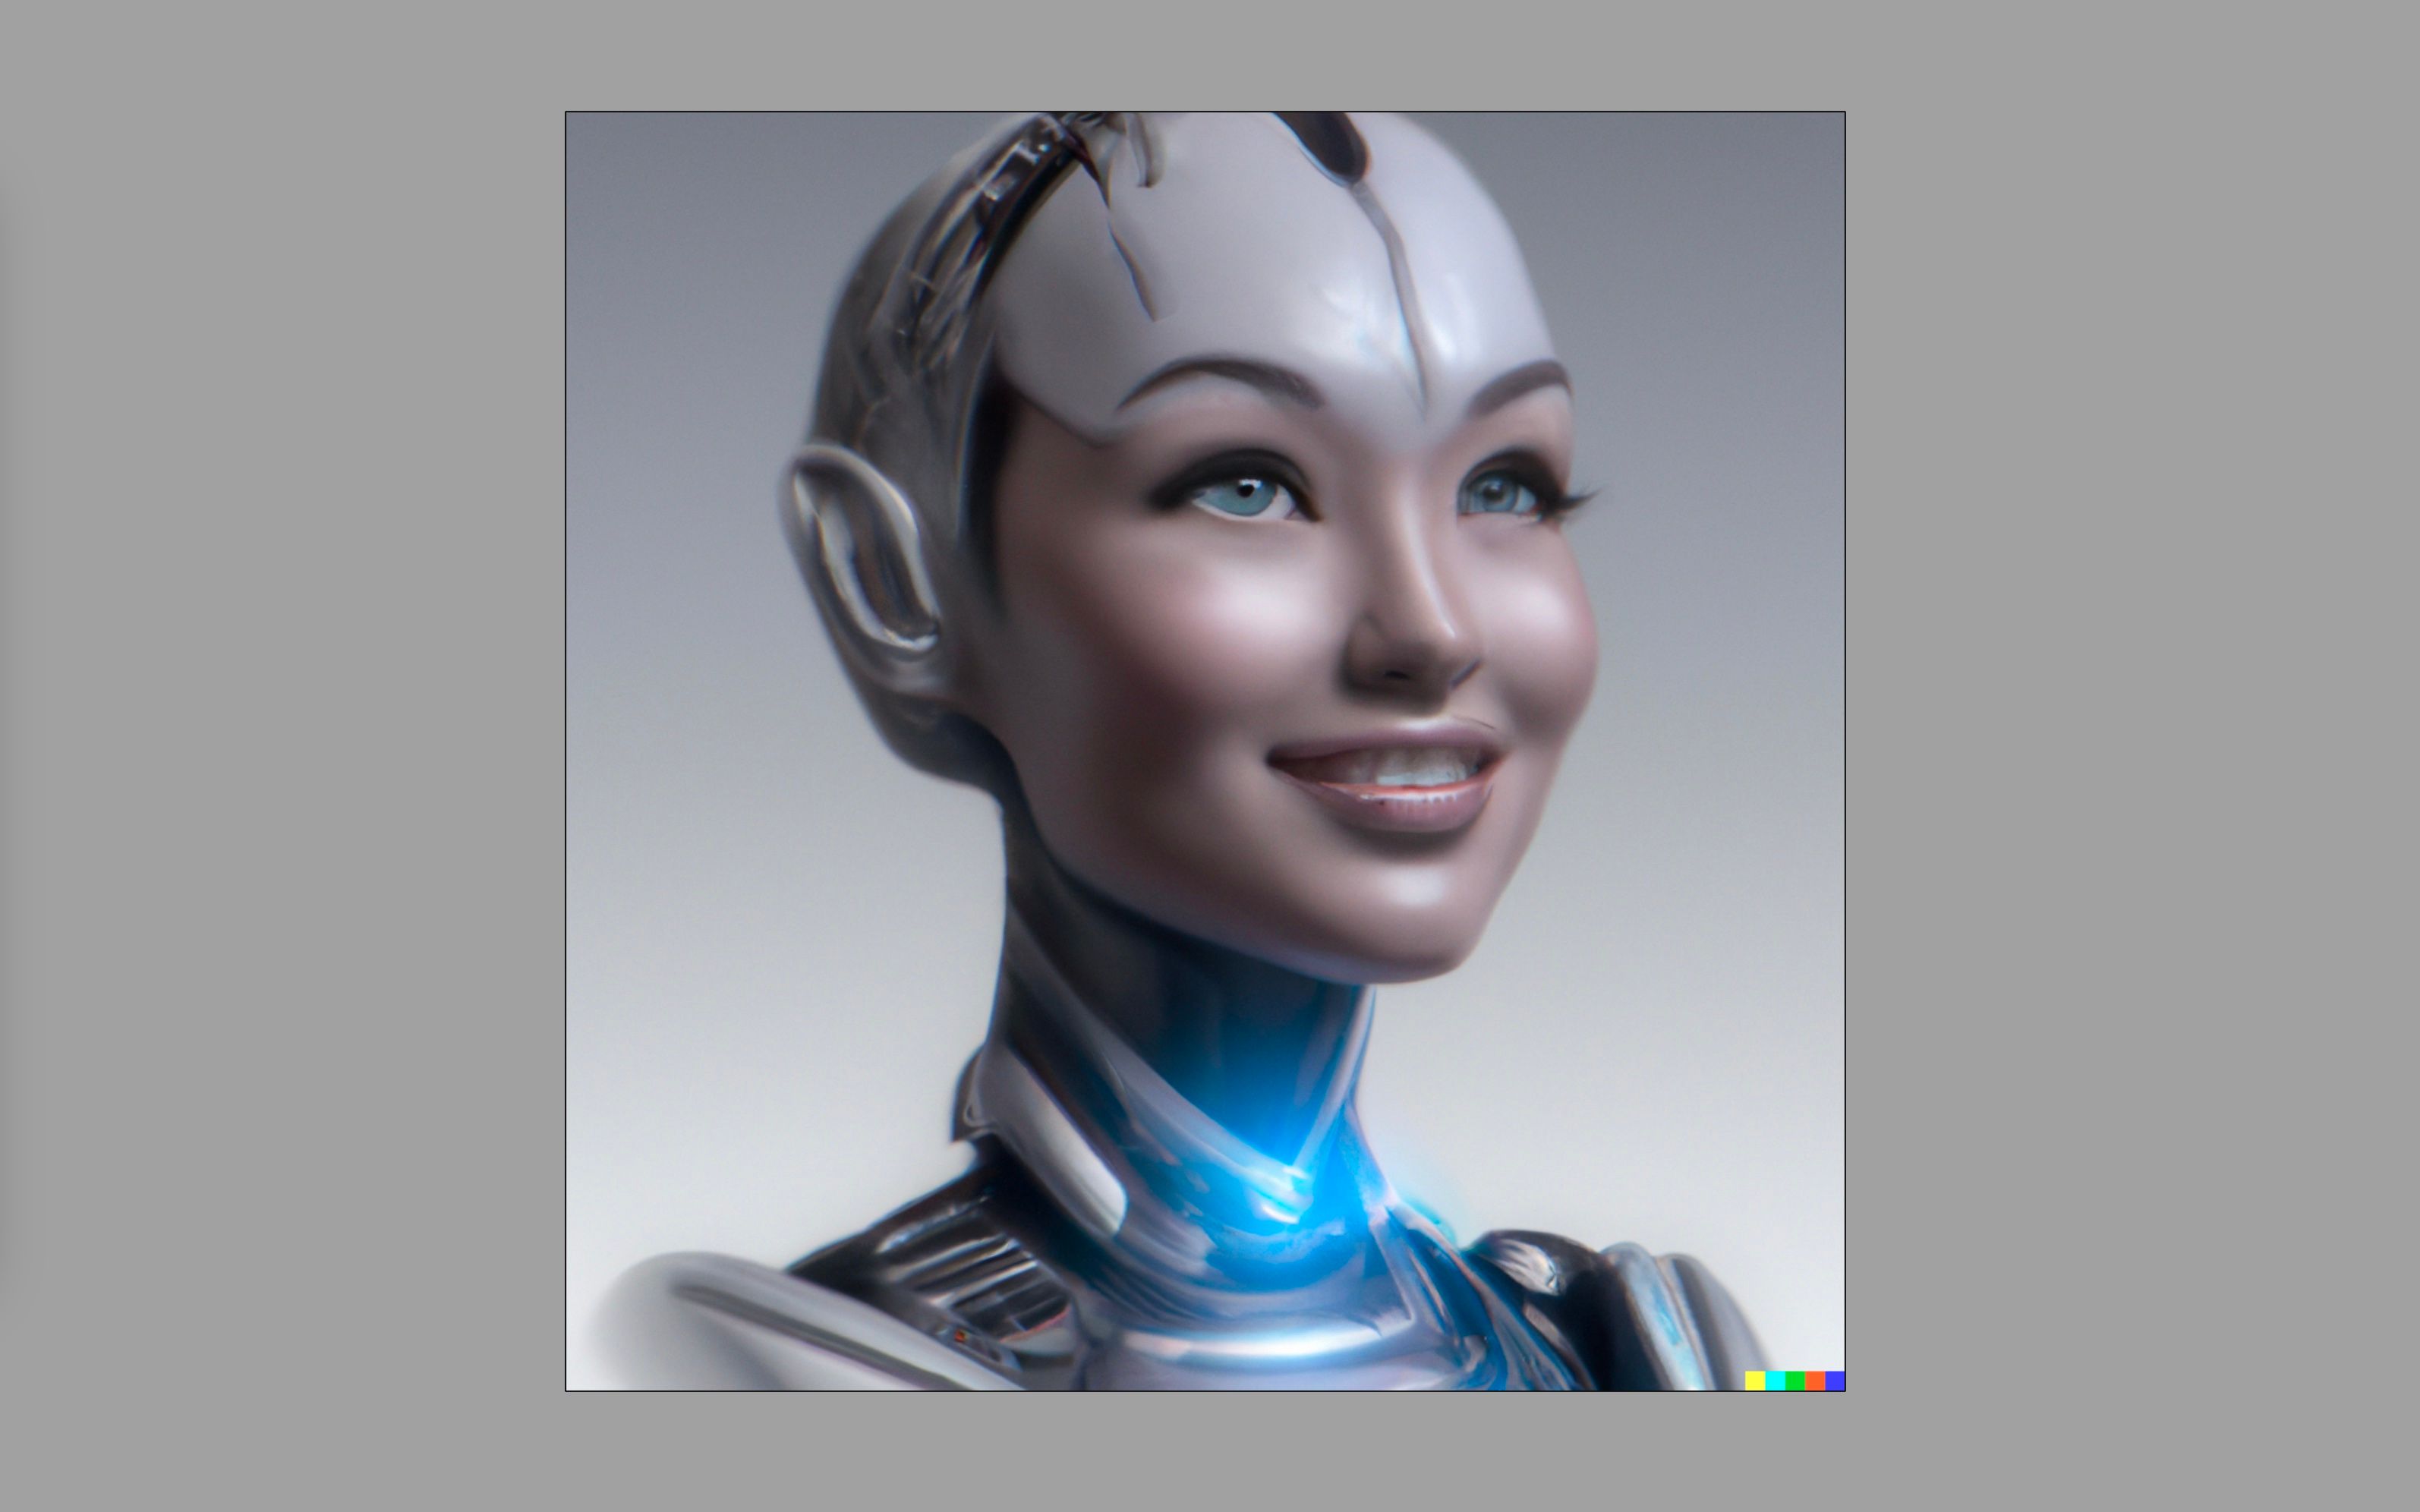 Portrait d'un cyborg dans le style de l'art numérique, généré avec Dall-E